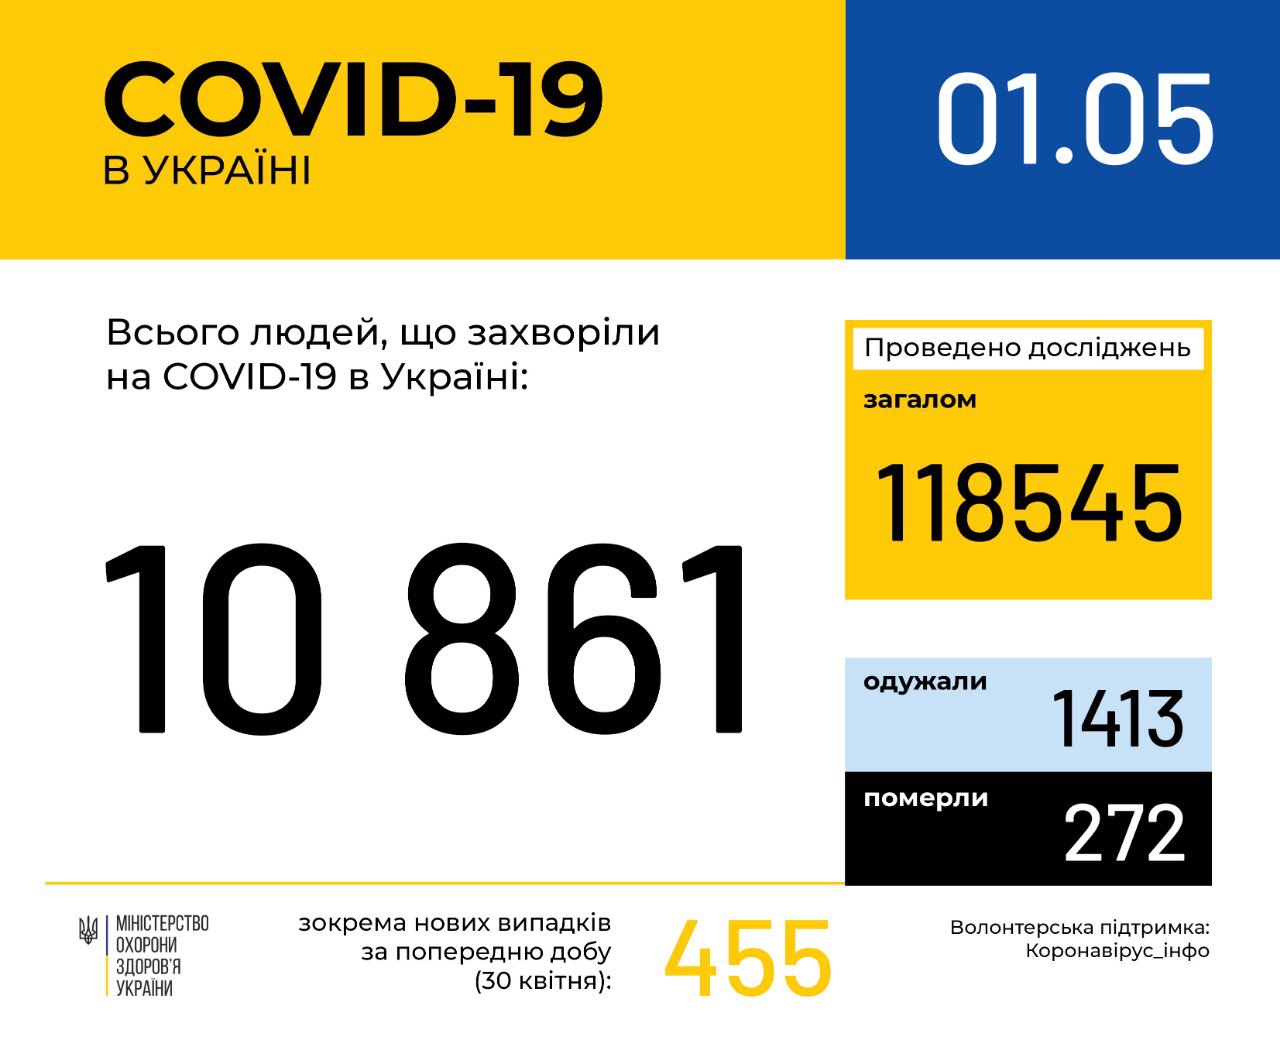 В Україні зафіксовано 10861 випадок коронавірусної хвороби COVID-19, - МОЗ